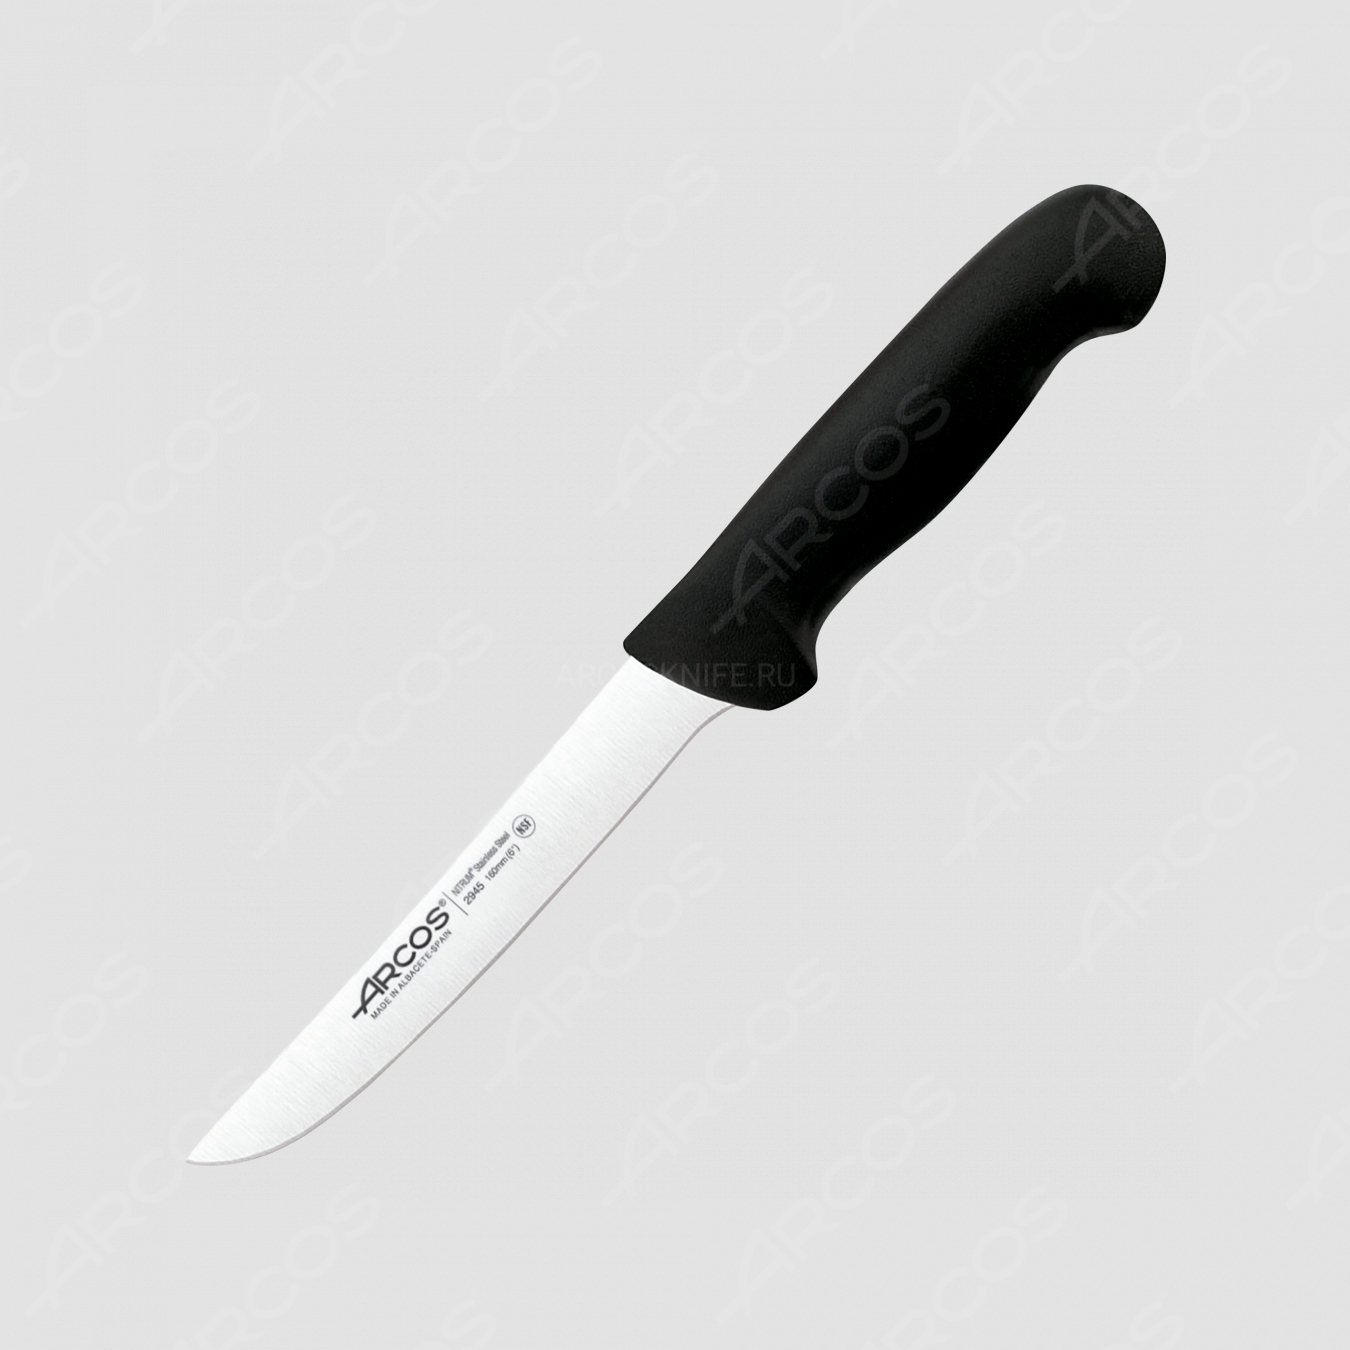 Нож кухонный обвалочный 16 см, рукоять - черная, серия 2900, ARCOS, Испания